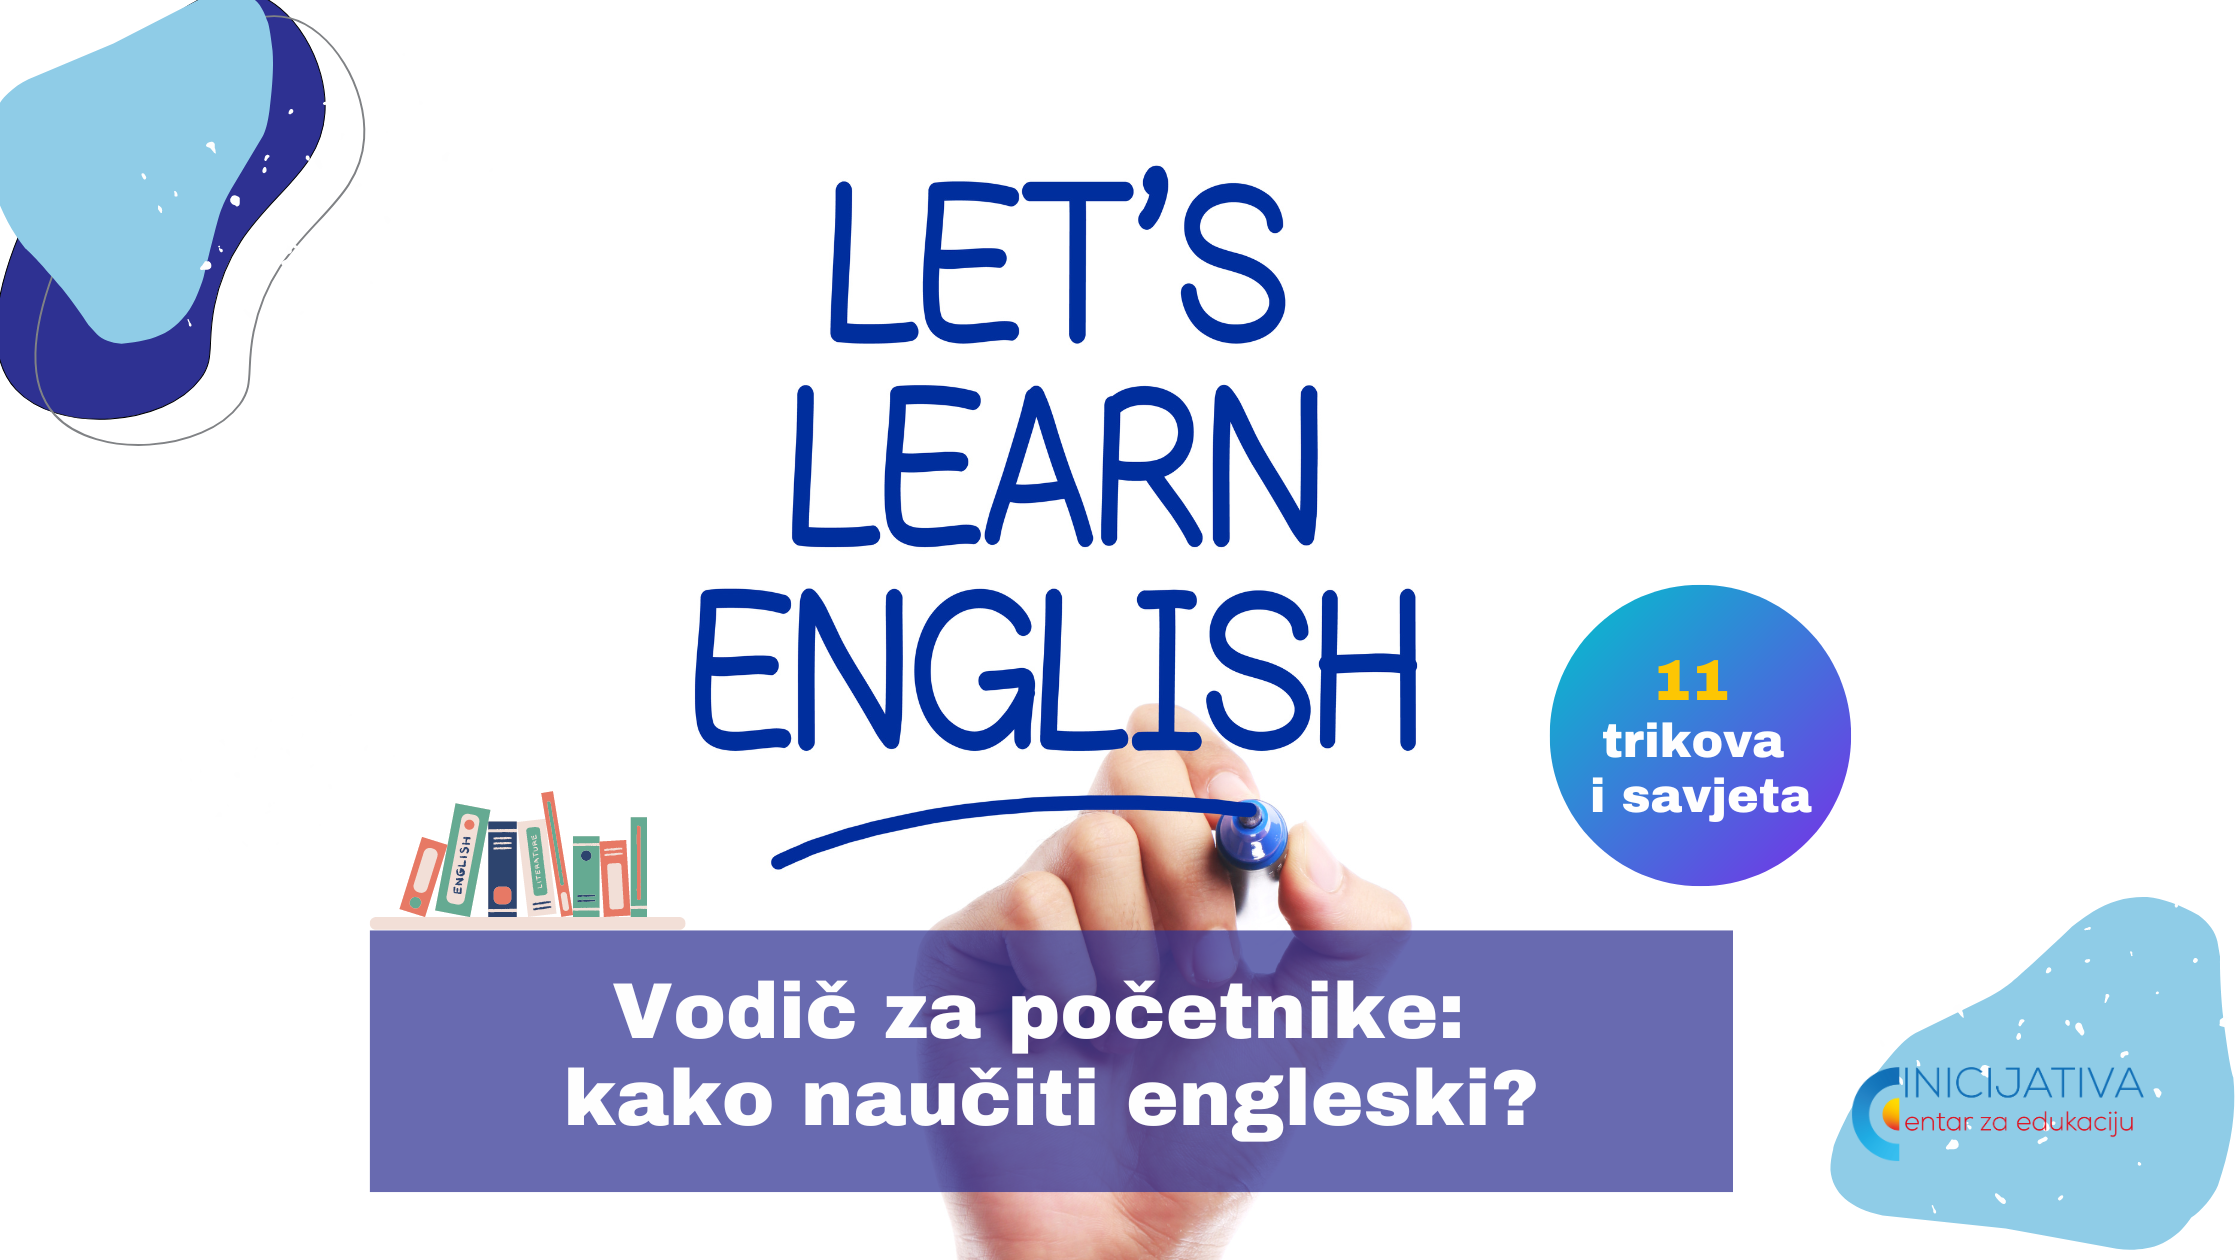 Vodič za početnike: kako naučiti engleski?